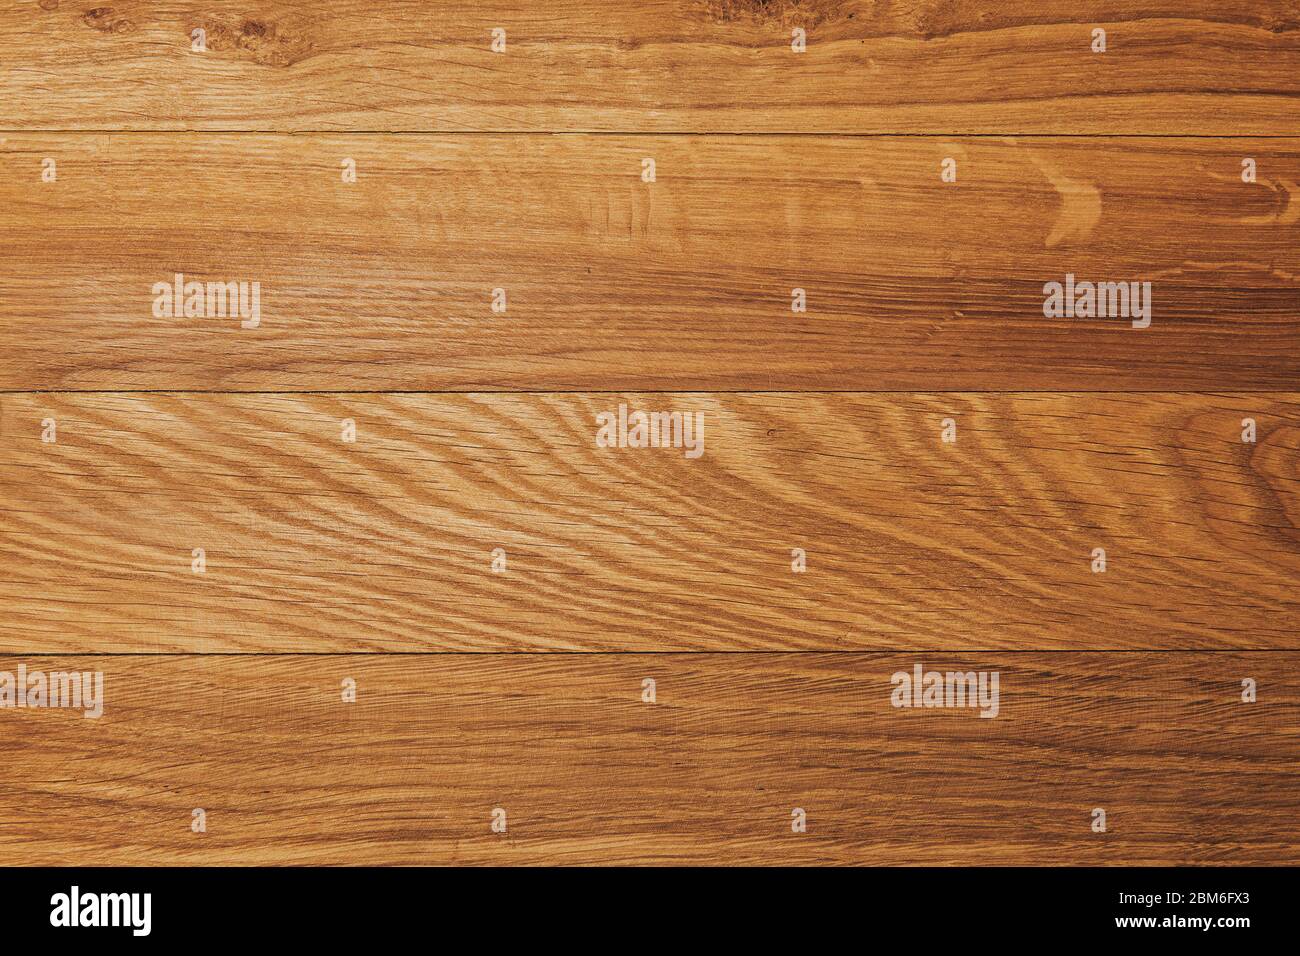 Natürliche Holzdiele Hintergrund. Handgefertigte Holztisch Textur. Raue Holzkulisse. Freier Platz für Text. Kopierbereich. Stockfoto